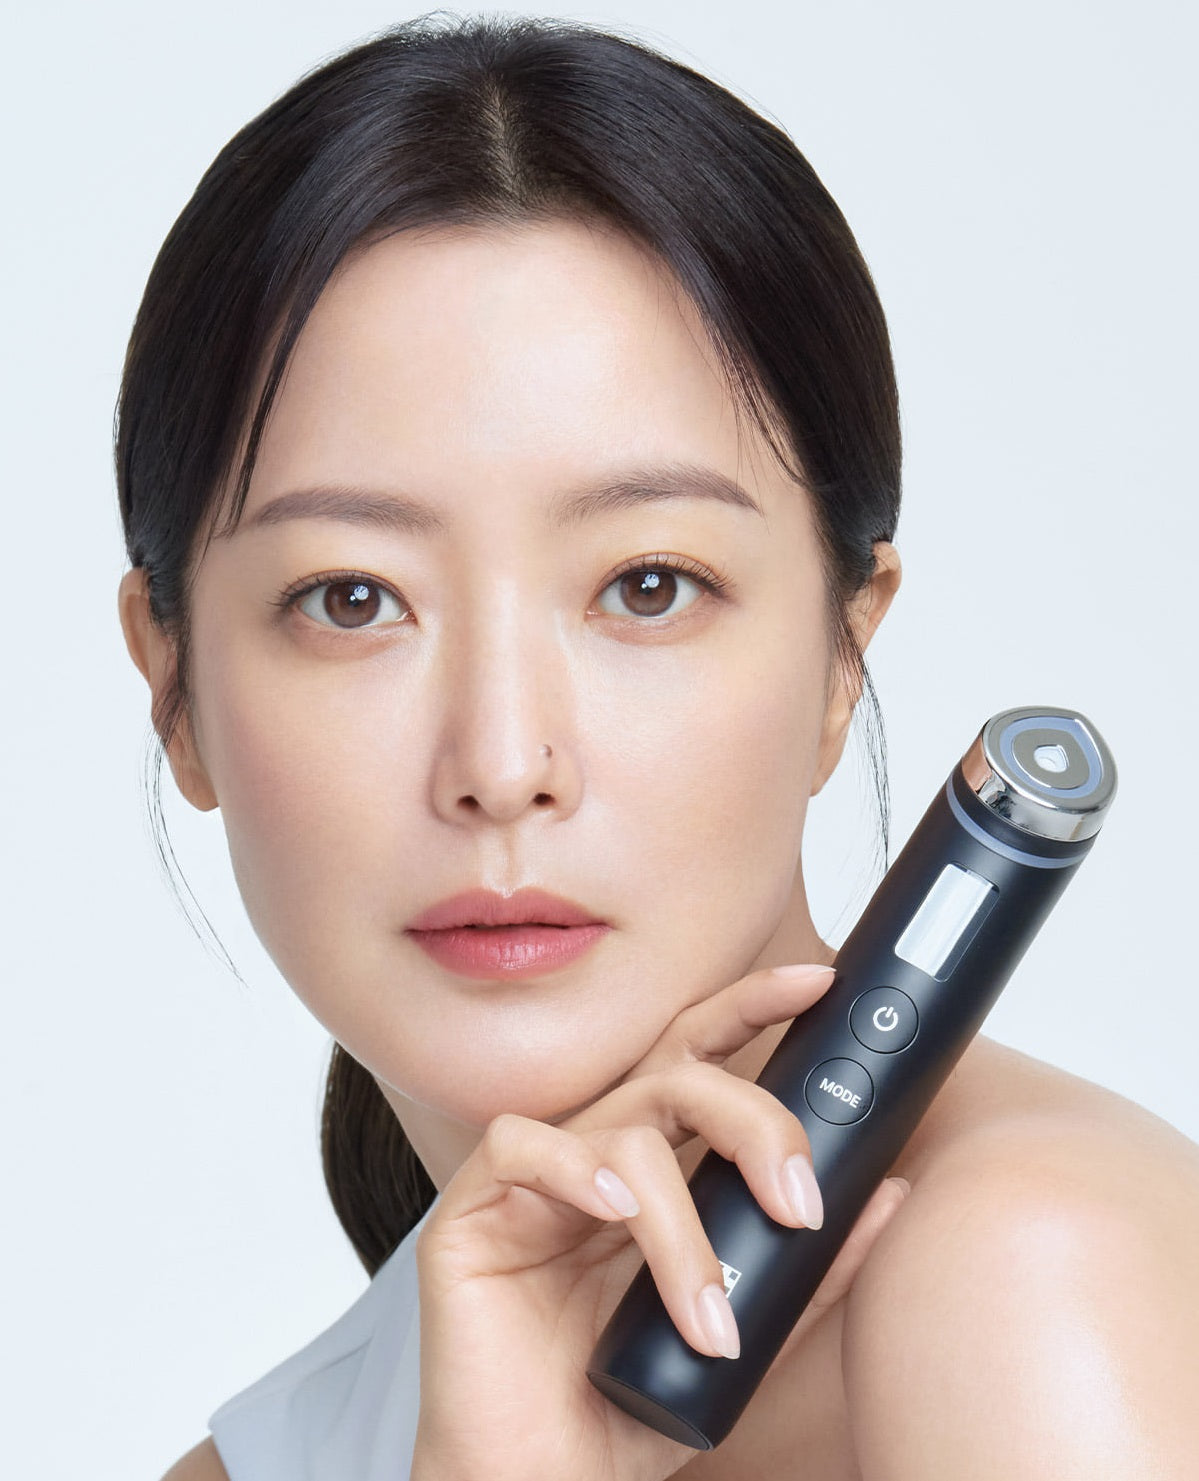 Medicube Booster Pro Beauty Cihazlarına yükseltmenin 4 nedeni